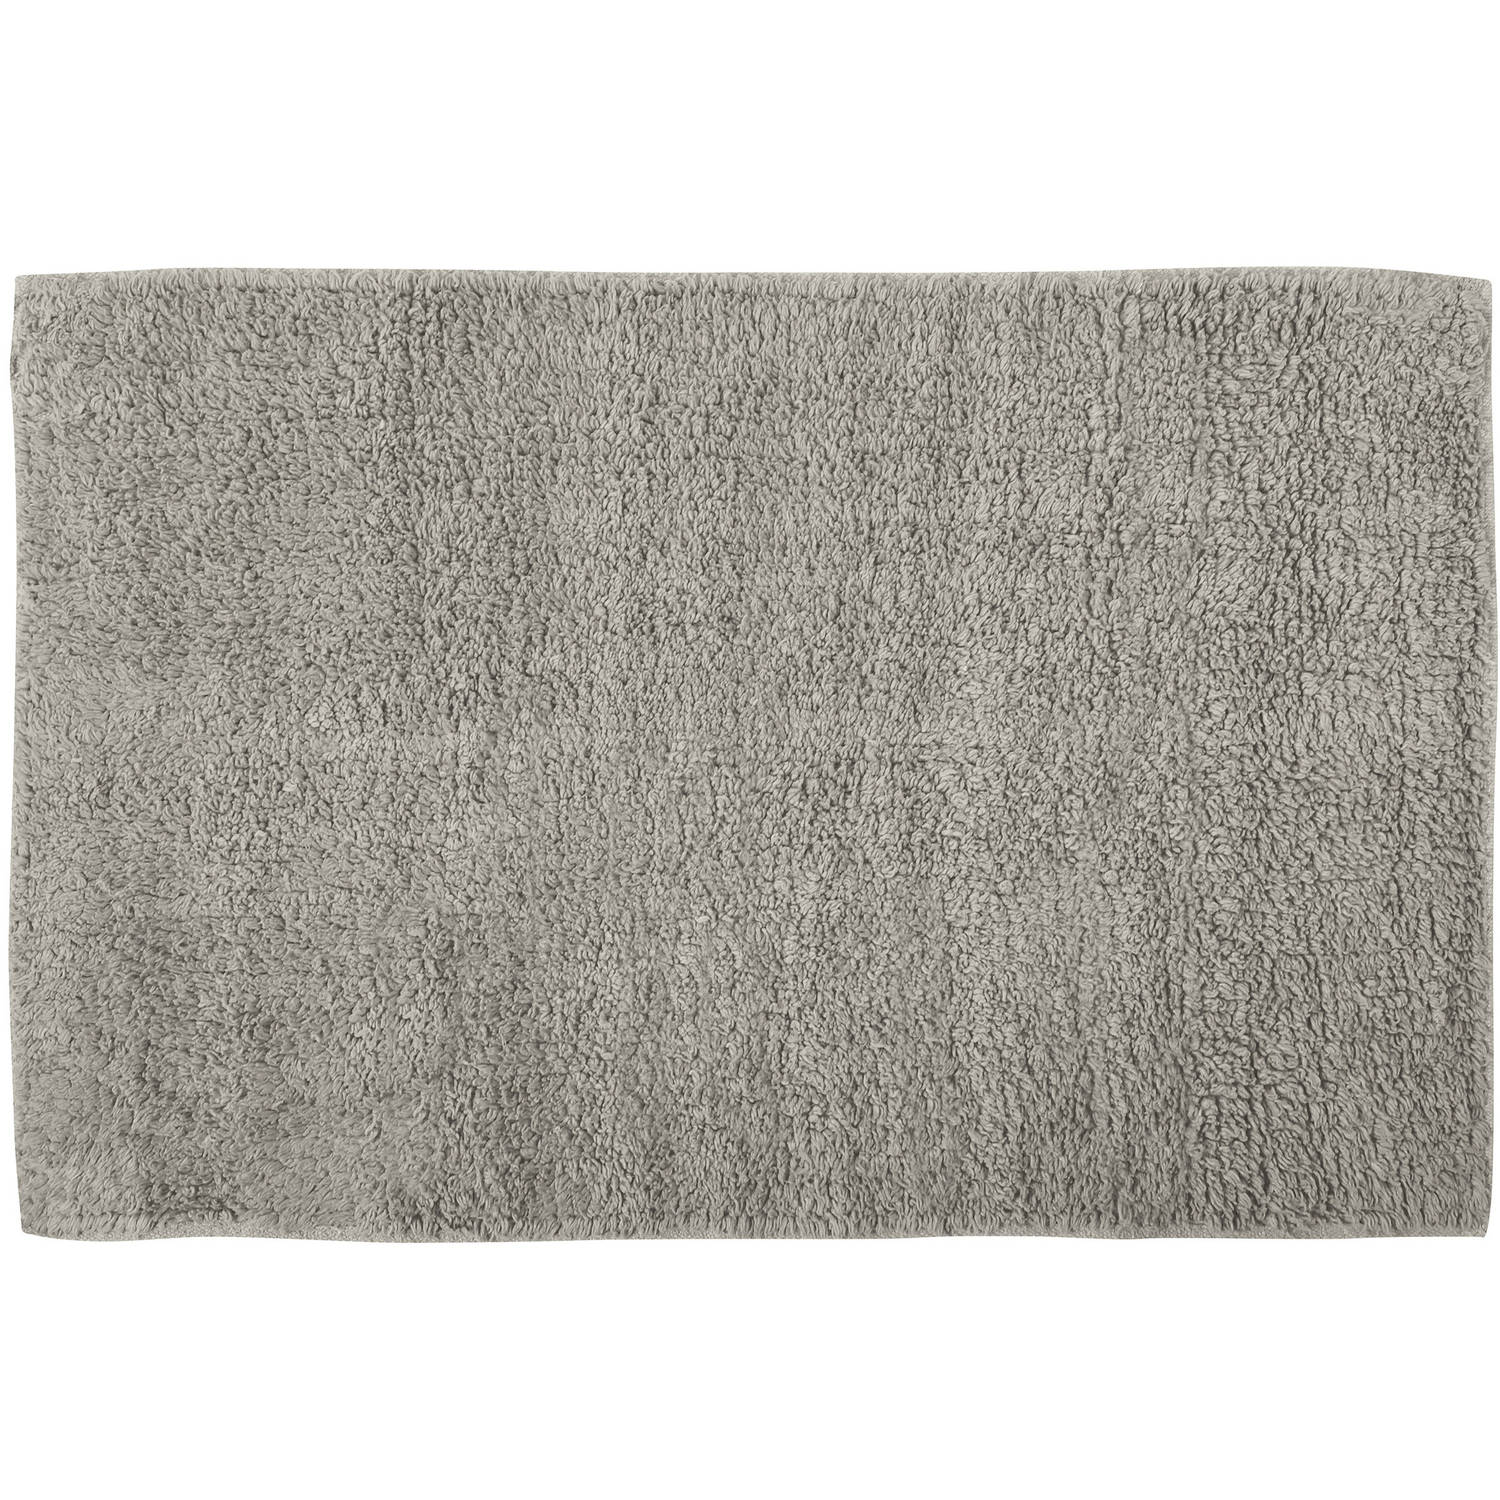 MSV Badkamerkleedje/badmat tapijtje - voor op de vloer - beige - 40 x 60 cm - polyester/katoen